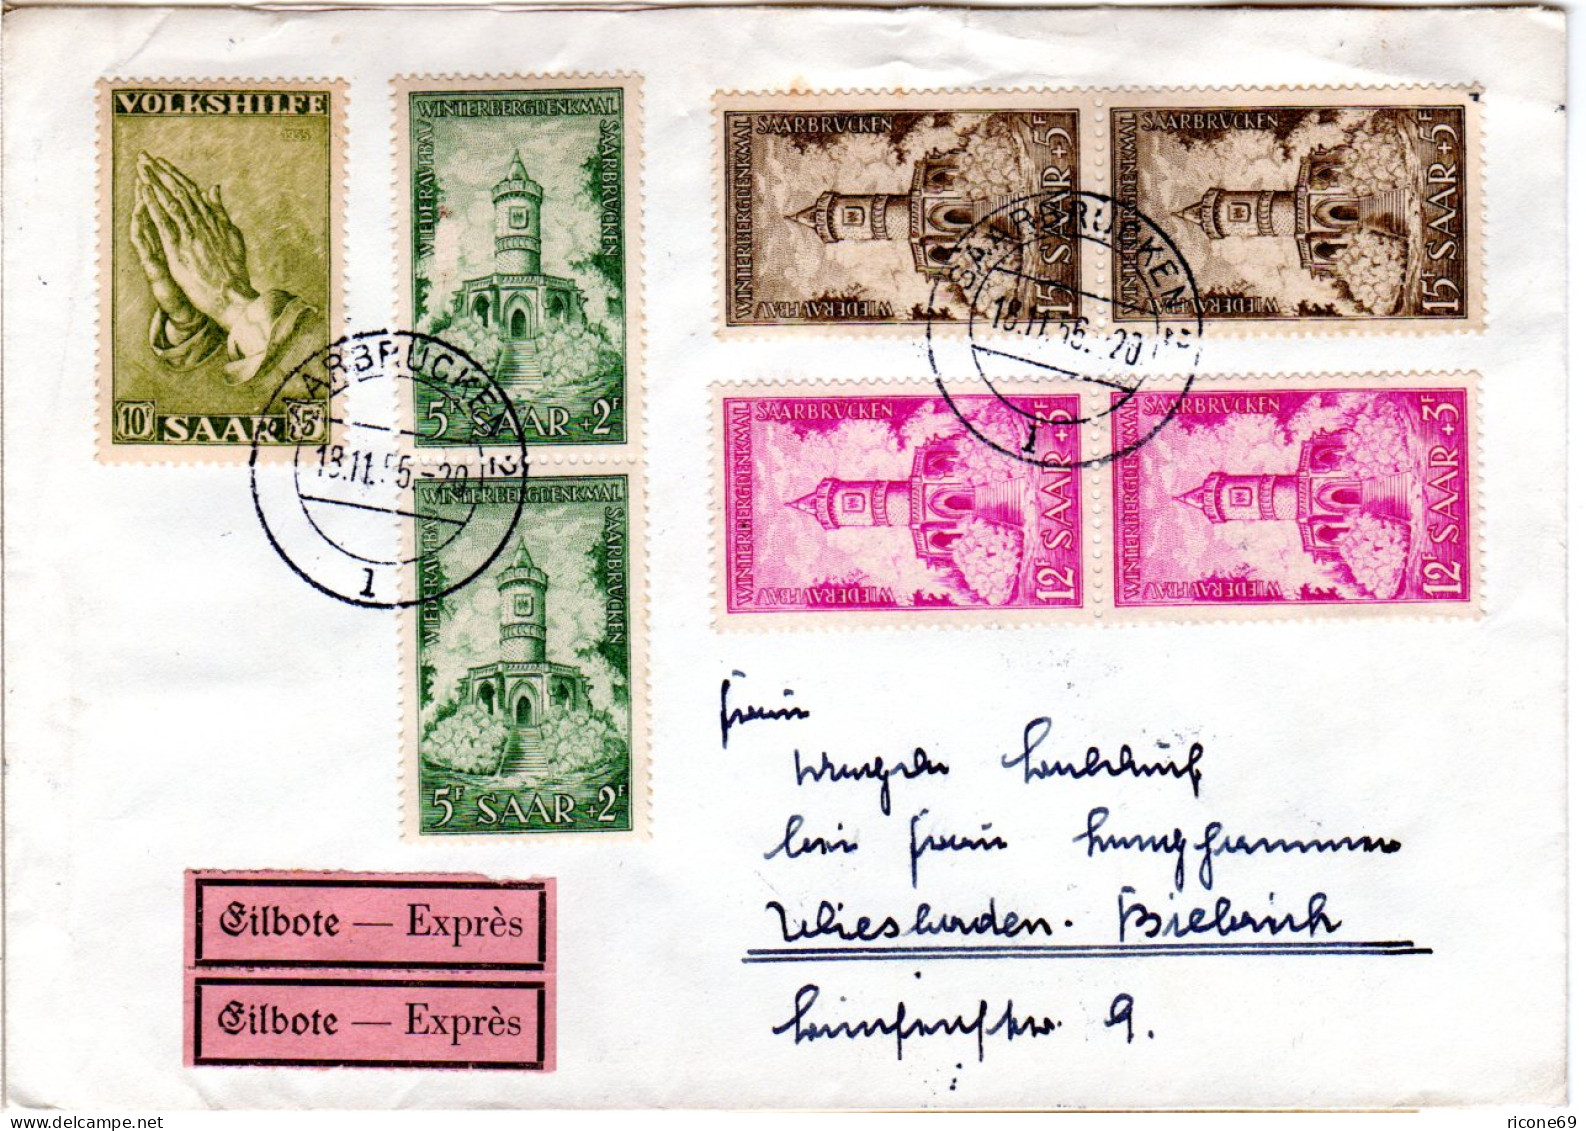 Saarland 1956, 7 Zuschlagmarken Auf Eilboten Brief V. Saarbrücken N. Wiesbaden. - Briefe U. Dokumente